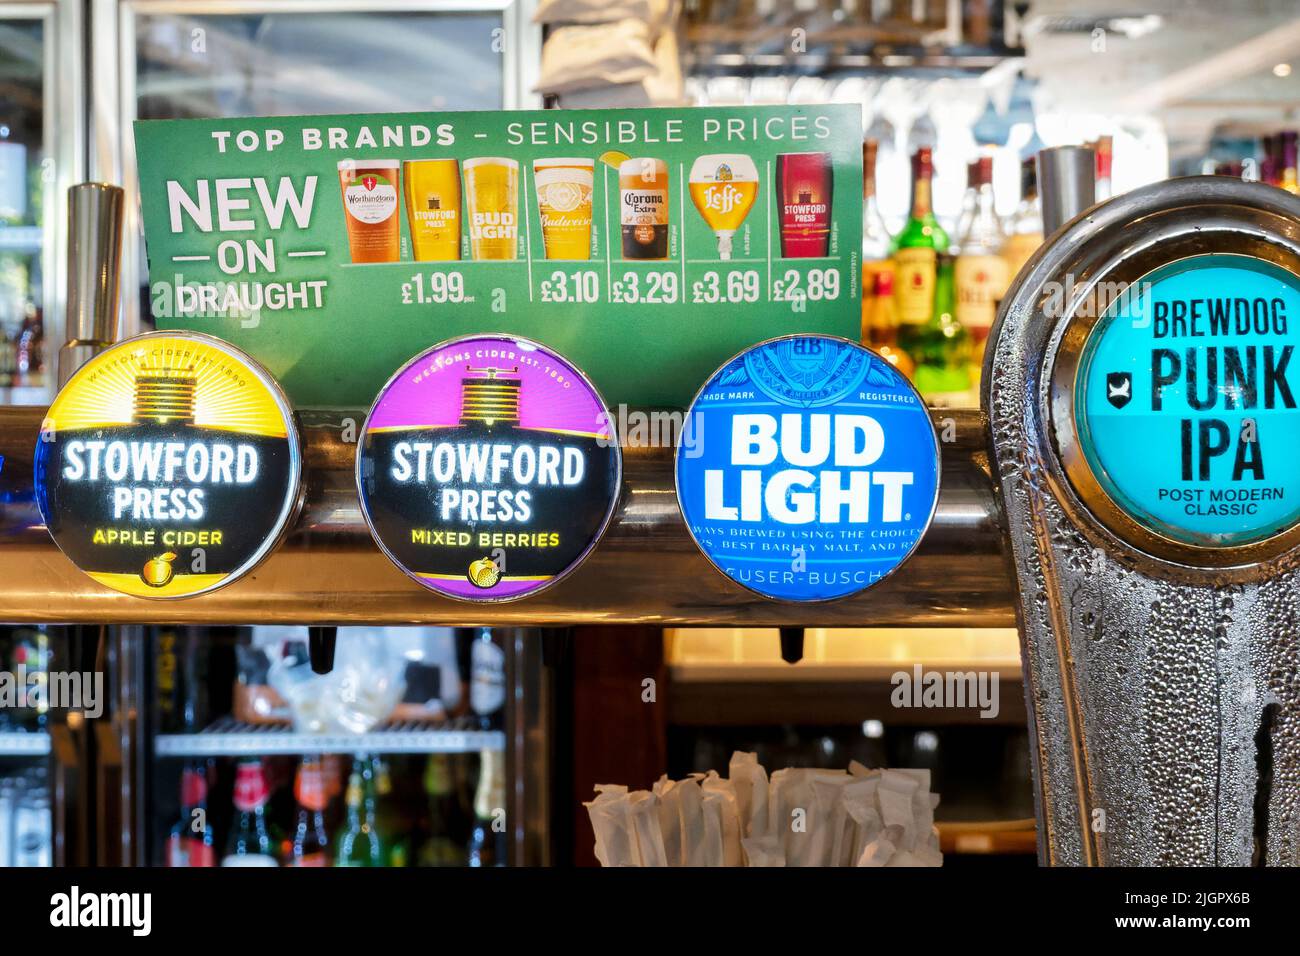 Una imagen de la zona del bar en un pub JD Wetherspoons que muestra claramente un tablero de publicidad mostrando cerveza de bajo precio y cerveza lager disponible de la cadena de pubs Foto de stock